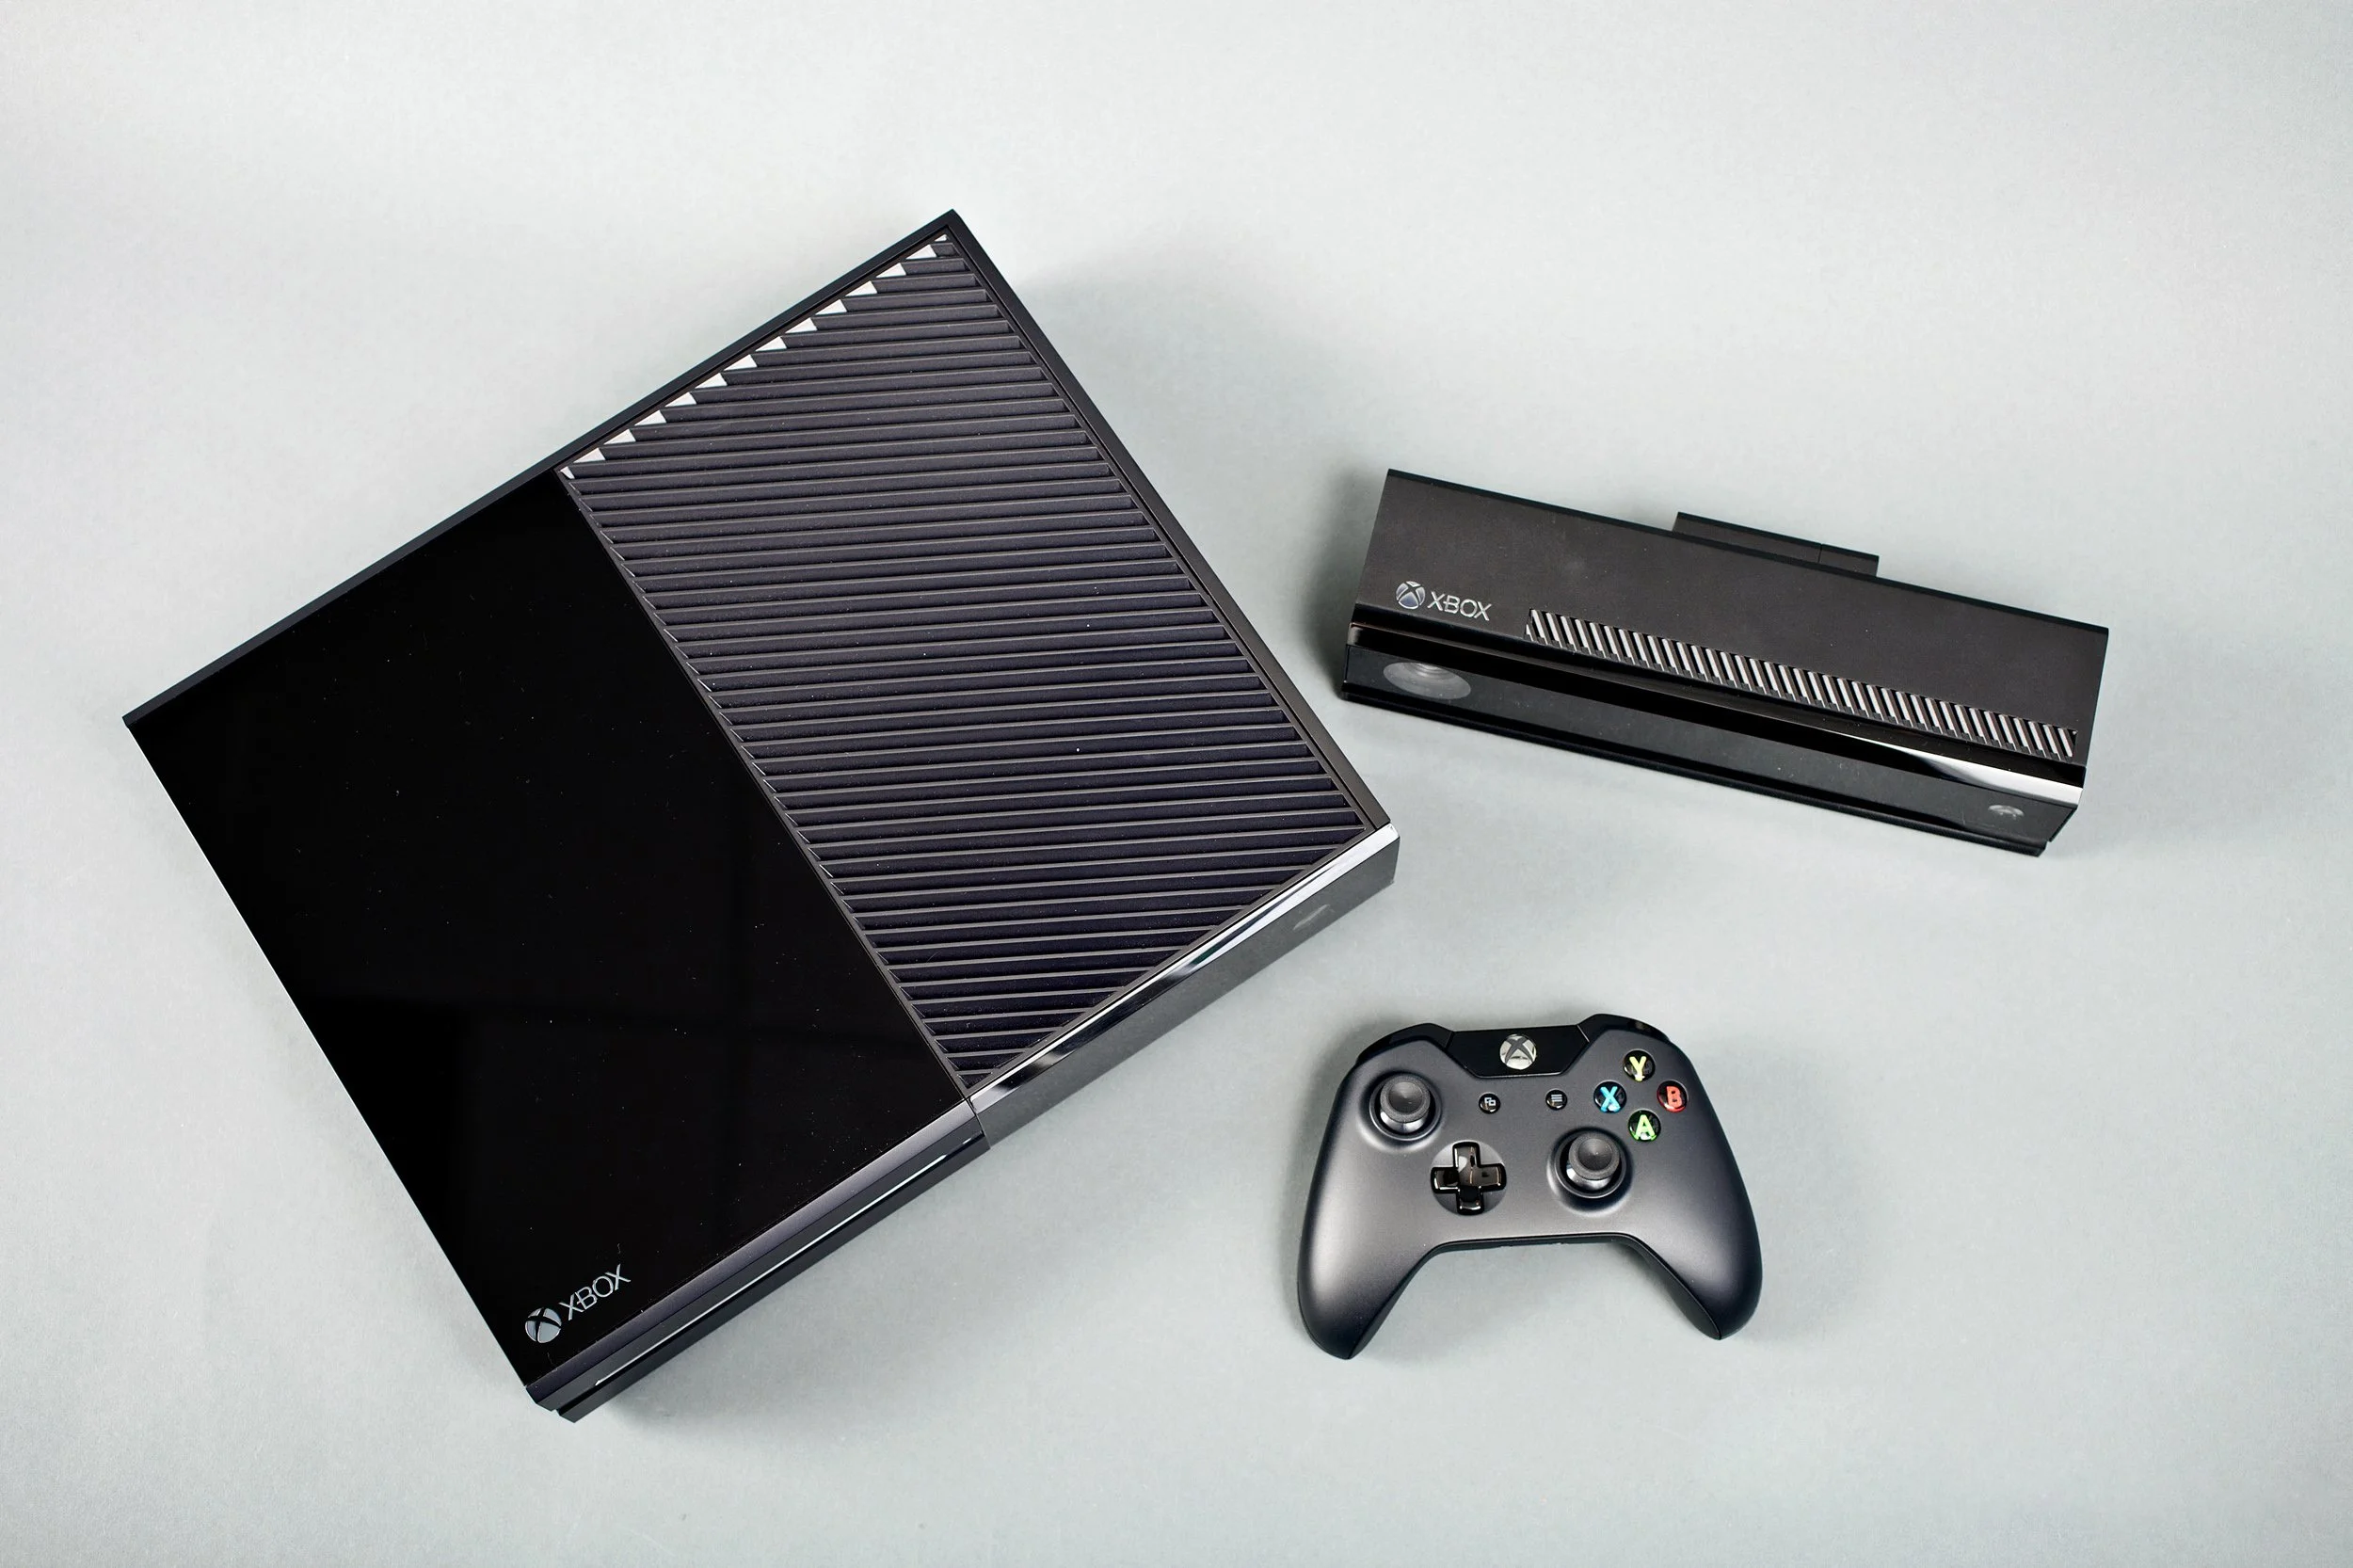 Вчера, 21 мая 2013 г., компания Microsoft представила миру свою новую развлекательную игровую систему Xbox One. Мы собрали в одном месте главное, что на данный момент известно об этой консоли.